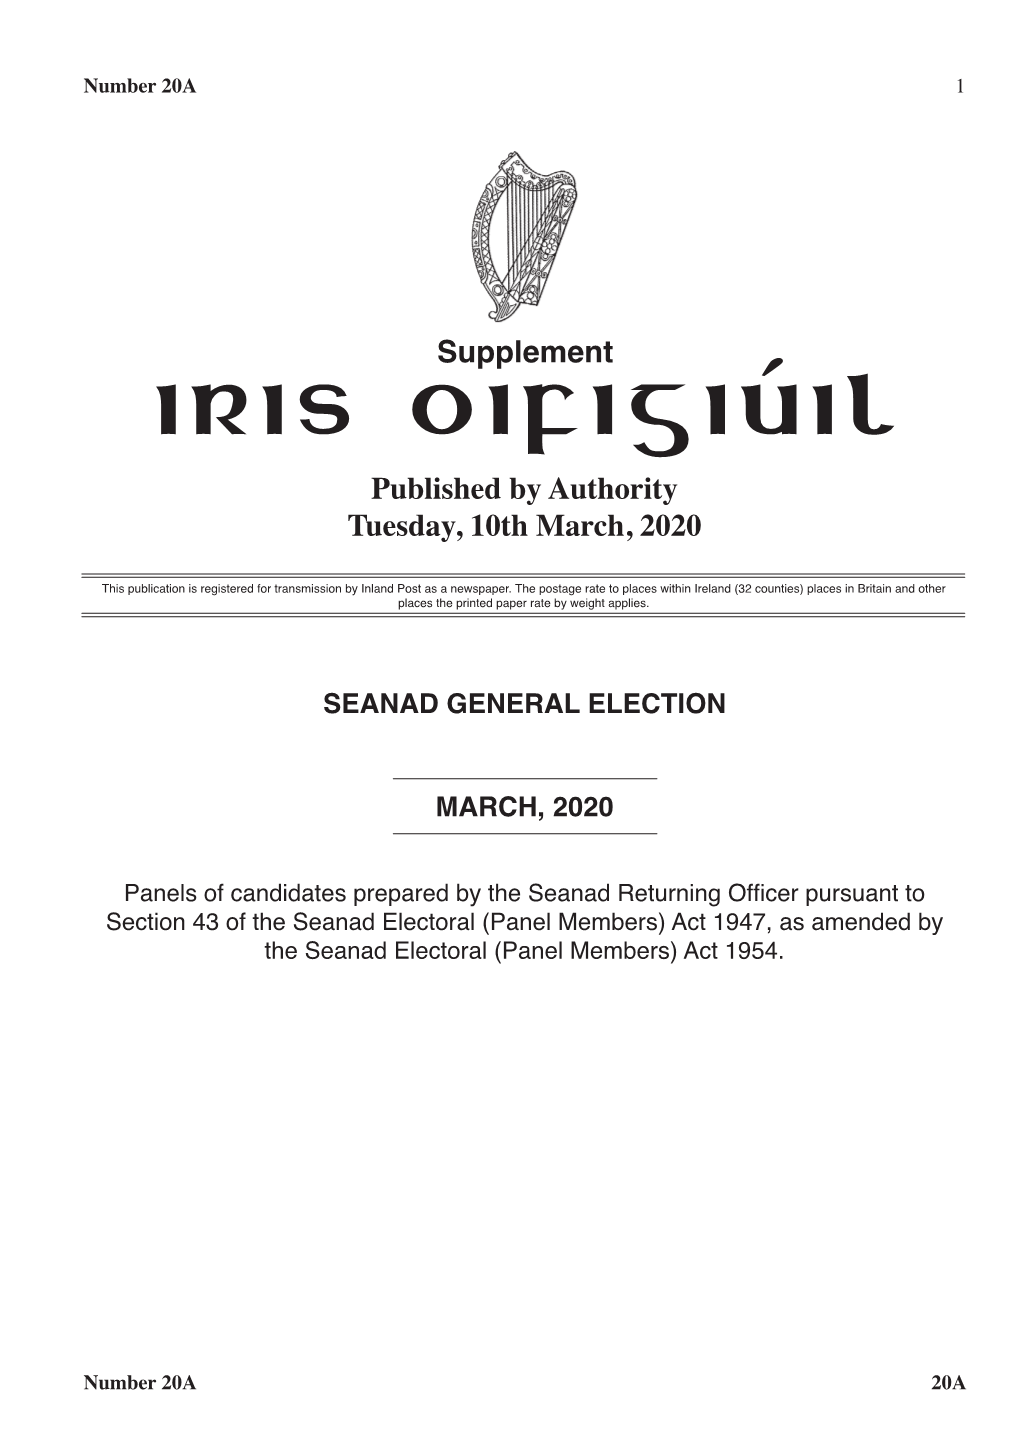 Seanad General Election 2020